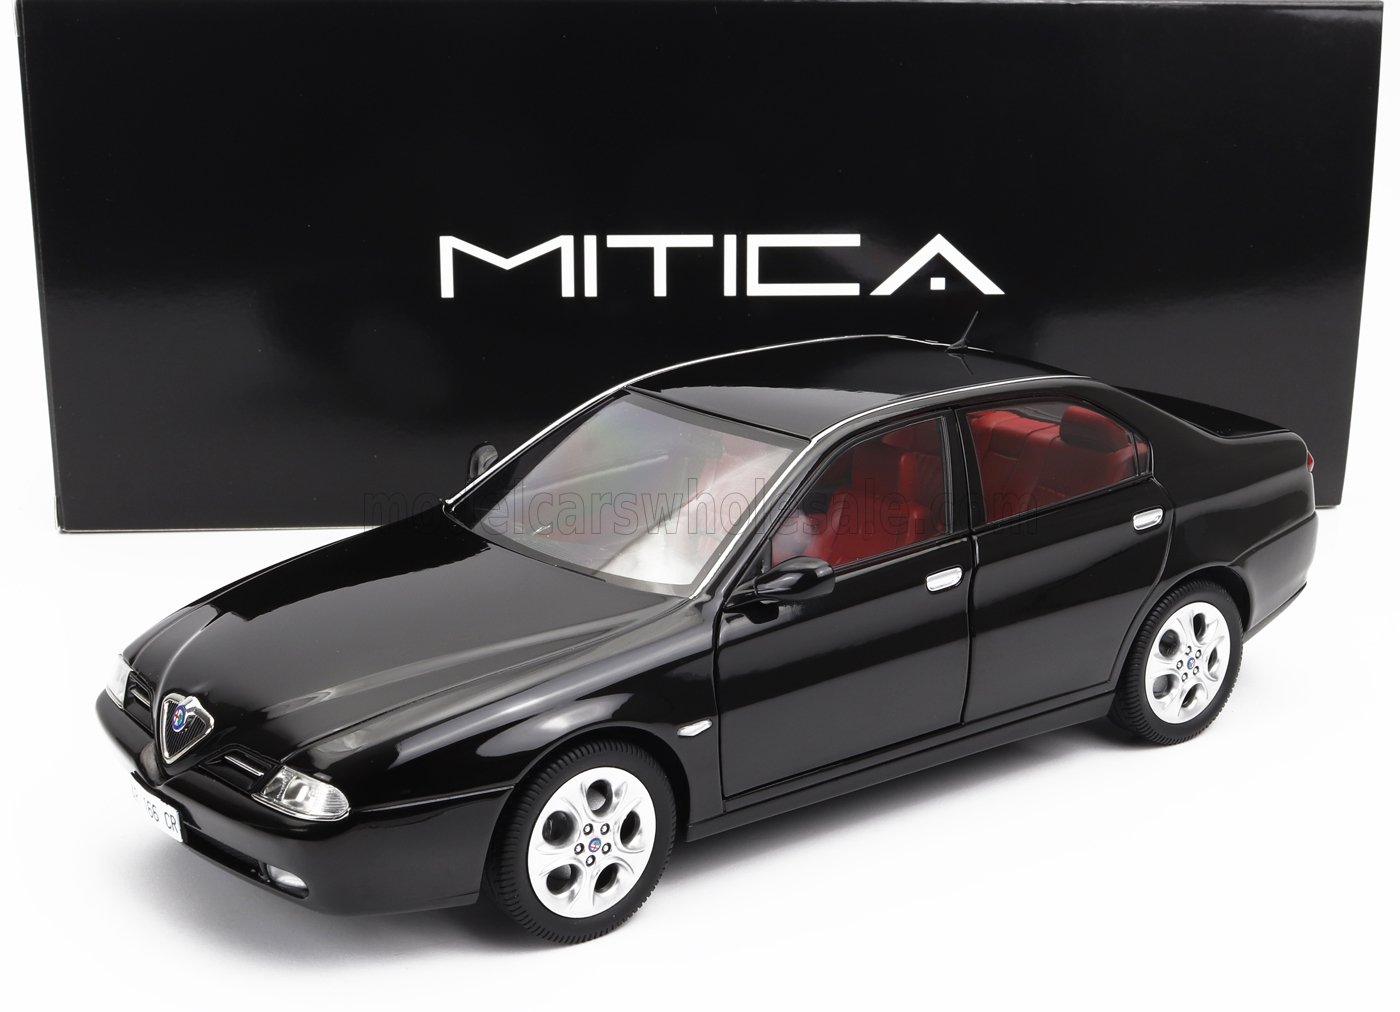 Mitica 1/18 ミニカー ダイキャストモデル 1998年モデル アルファロメオ ALFA ROMEO - 166 3.0 V6 1998 – RED INTERIOR - BLACK ブラック・レッドインテリア